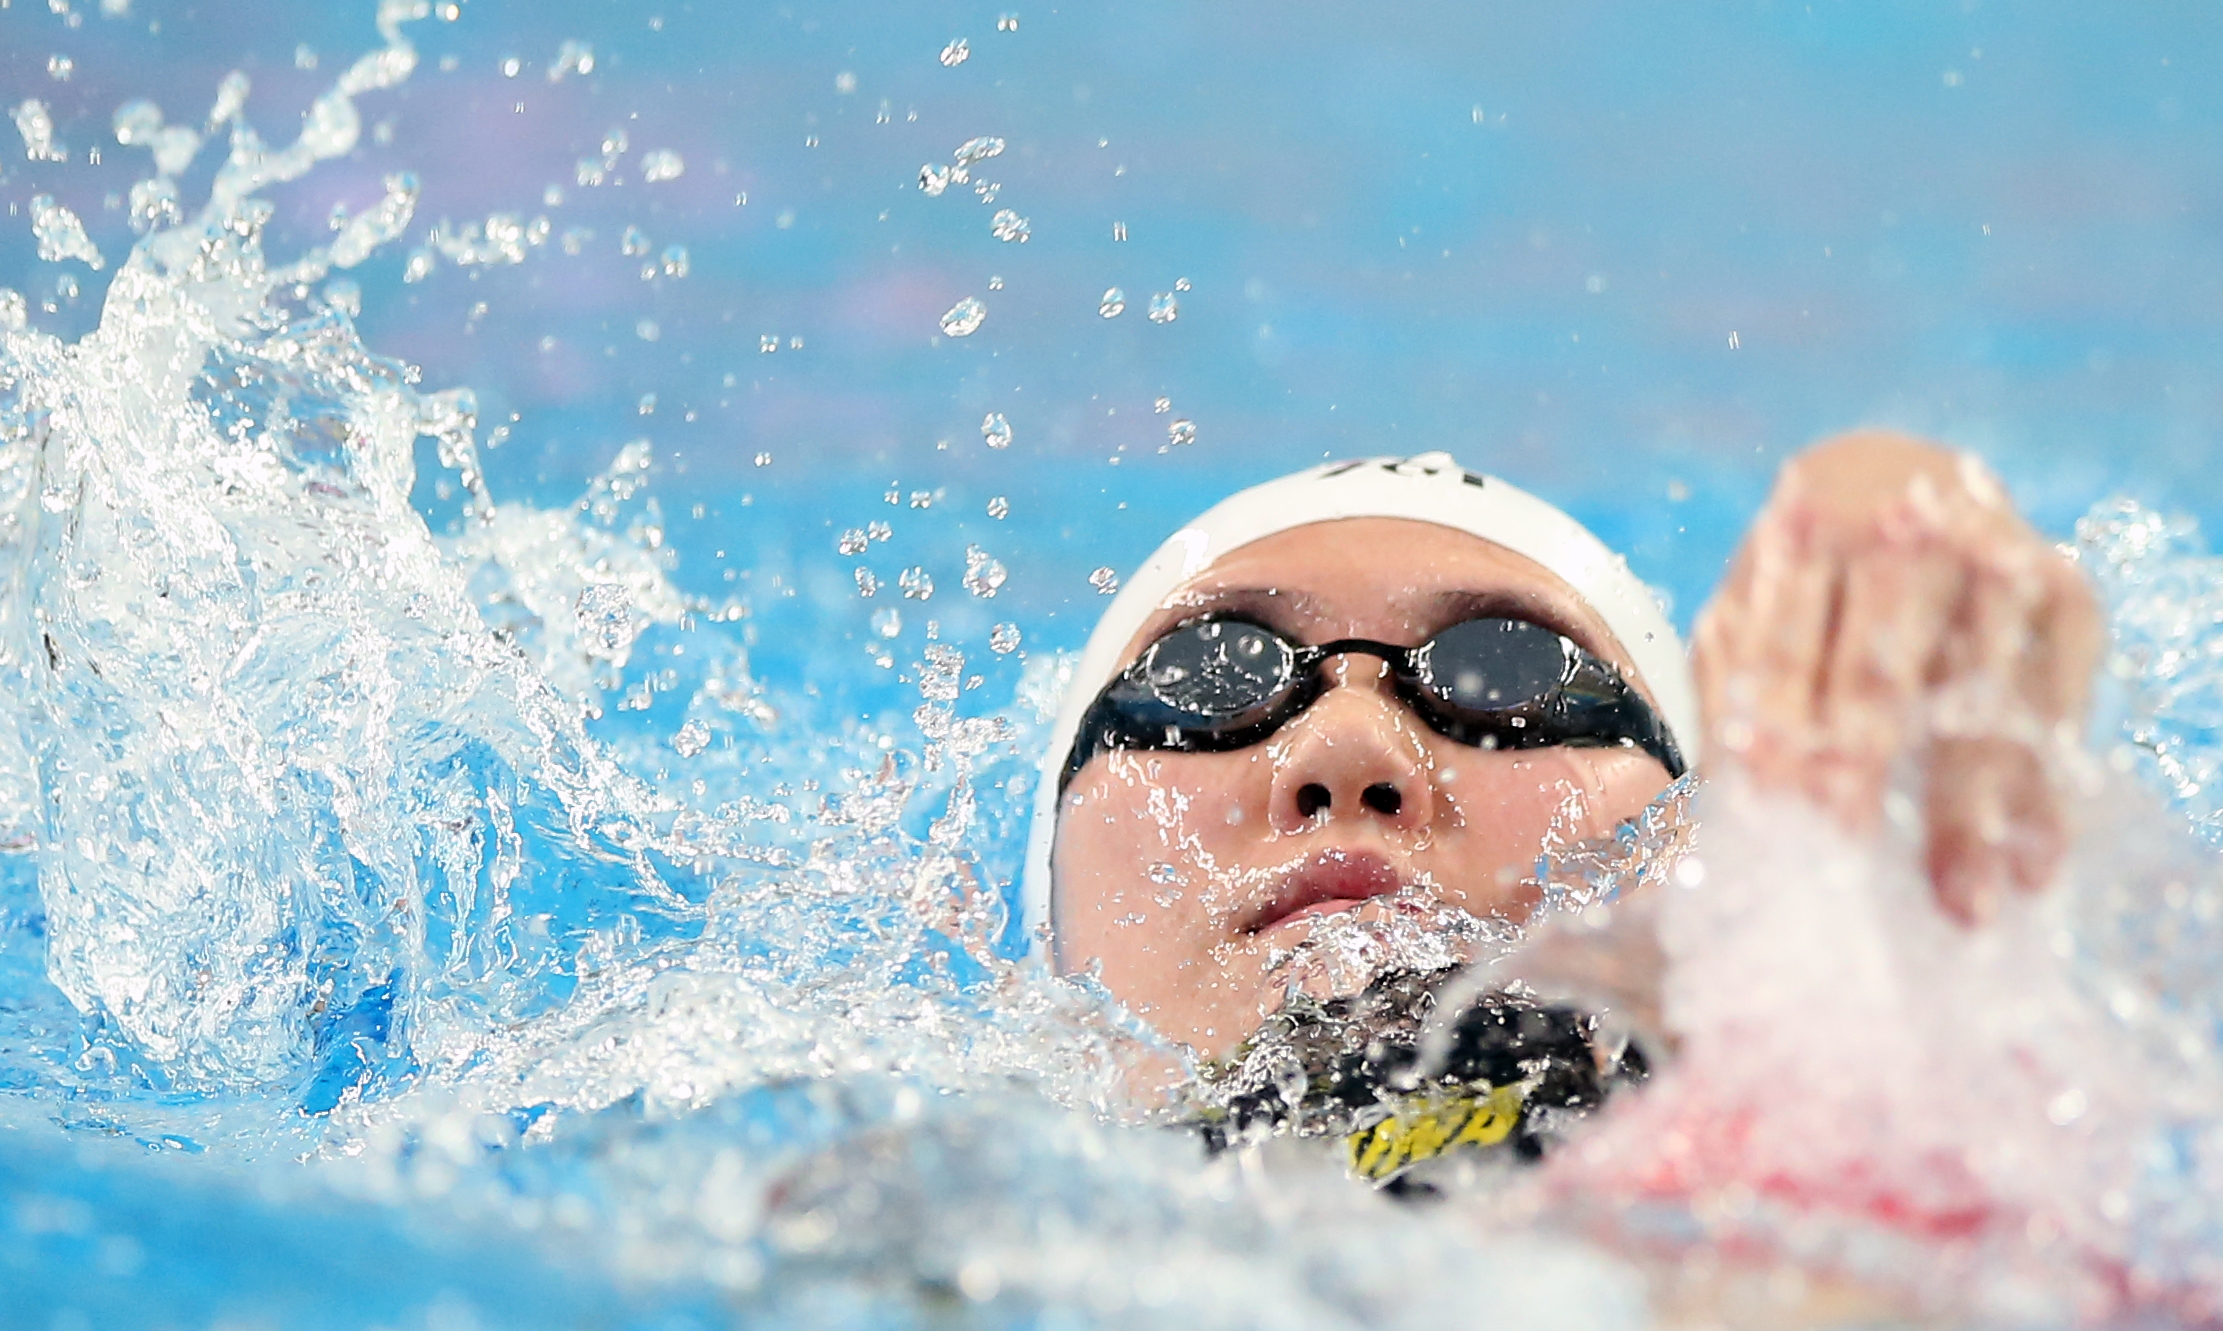 游泳——全国冠军赛:叶诗文获女子400米混合泳冠军